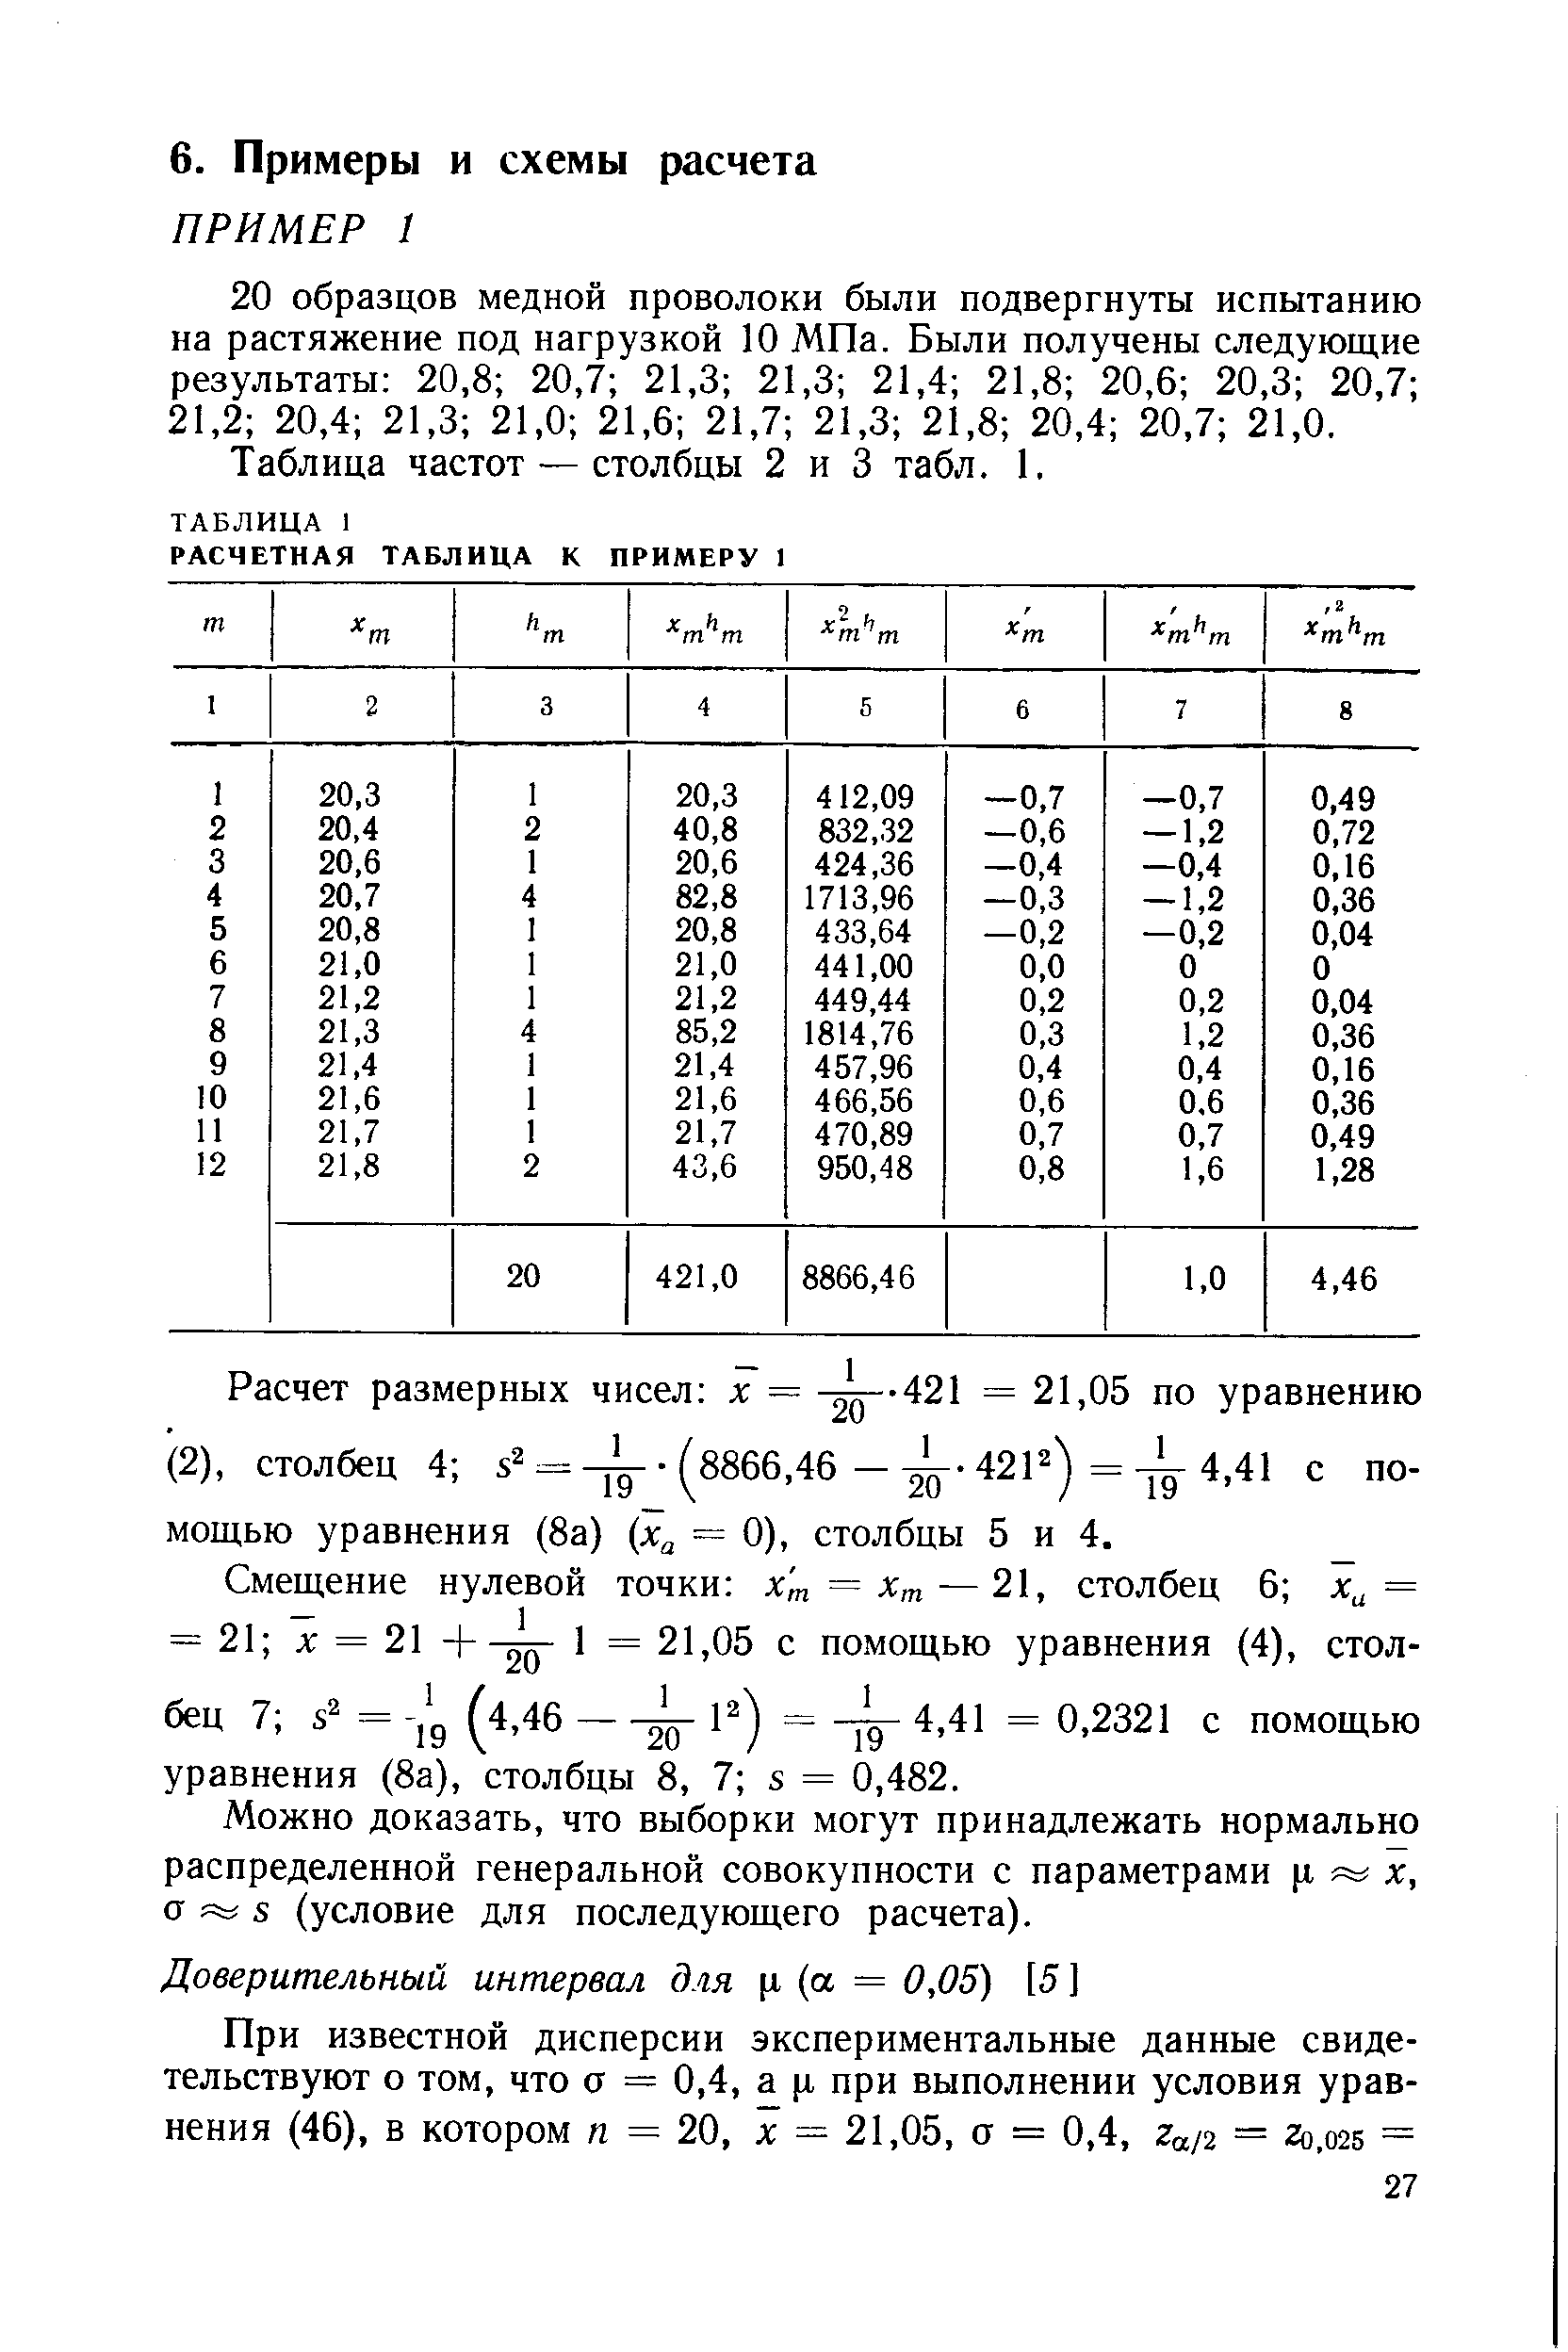 Можно доказать, что выборки могут принадлежать нормально распределенной генеральной совокупности с параметрами х, а 5 (условие для последующего расчета).
